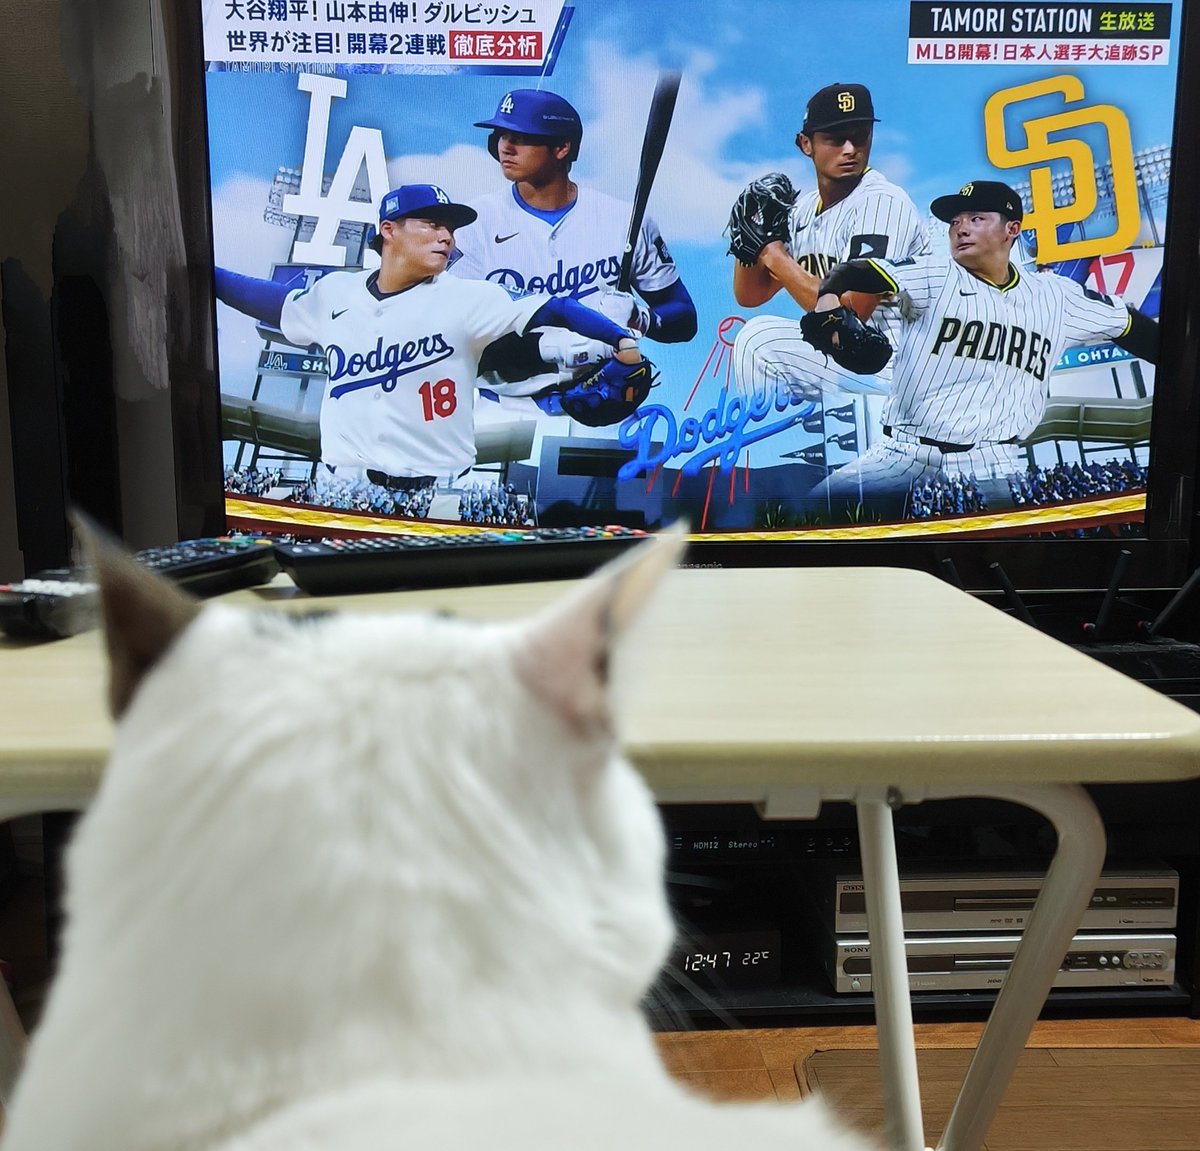 昨夜放送のタモリステーションを観ようとしたら一緒に観るにゃ…と膝に乗ってきた😸

#猫
#タモリステーション 
#日本人選手大追跡SP